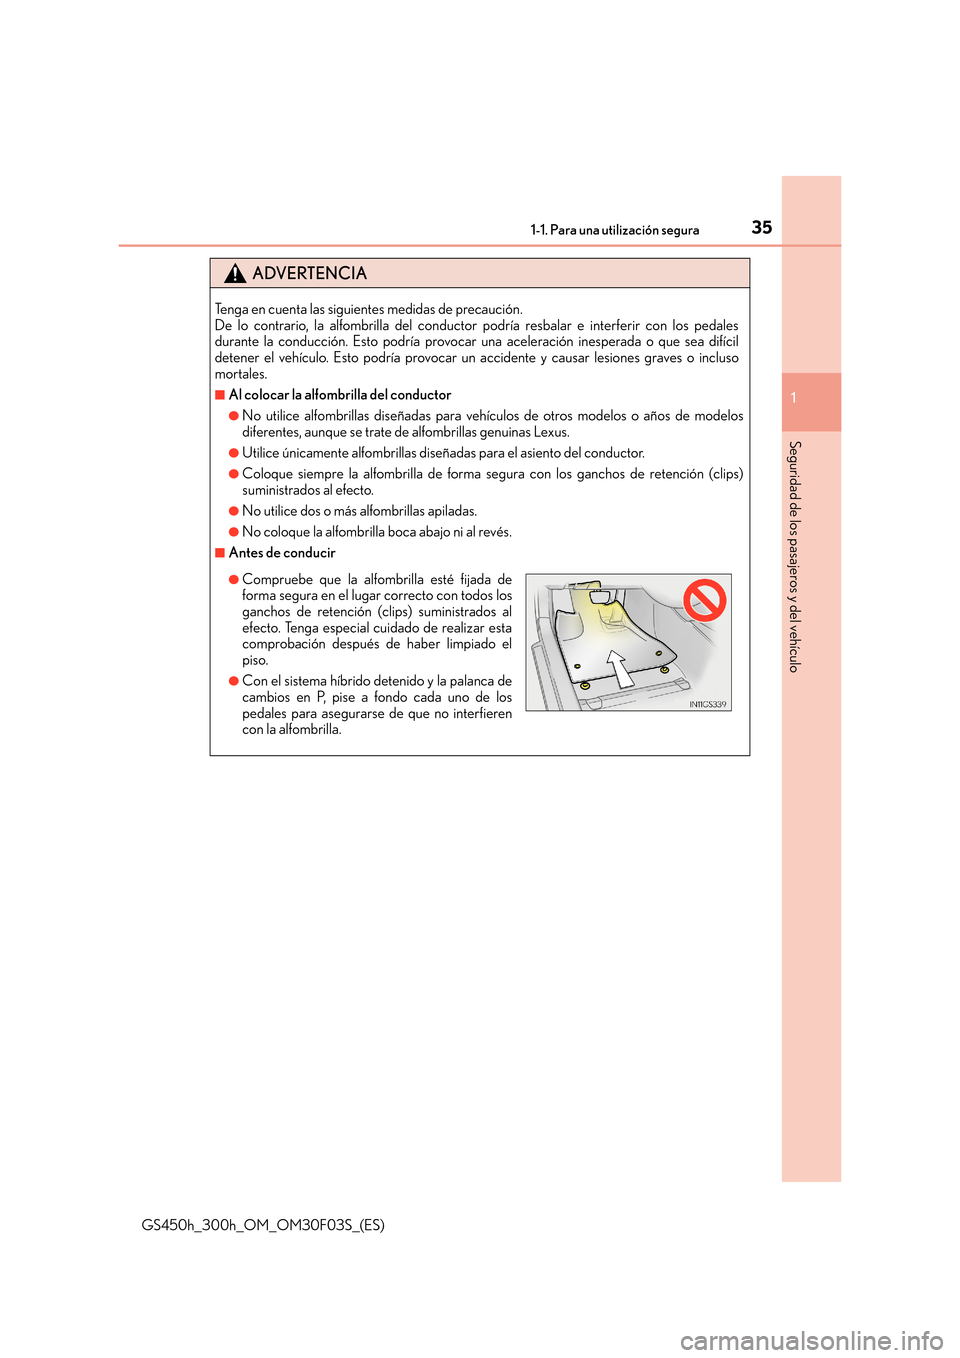 Lexus GS450h 2015  Manual del propietario (in Spanish) 351-1. Para una utilización segura
1
Seguridad de los pasajeros y del vehículo
GS450h_300h_OM_OM30F03S_(ES)
ADVERTENCIA
Tenga en cuenta las siguientes medidas de precaución. 
De lo contrario, la al